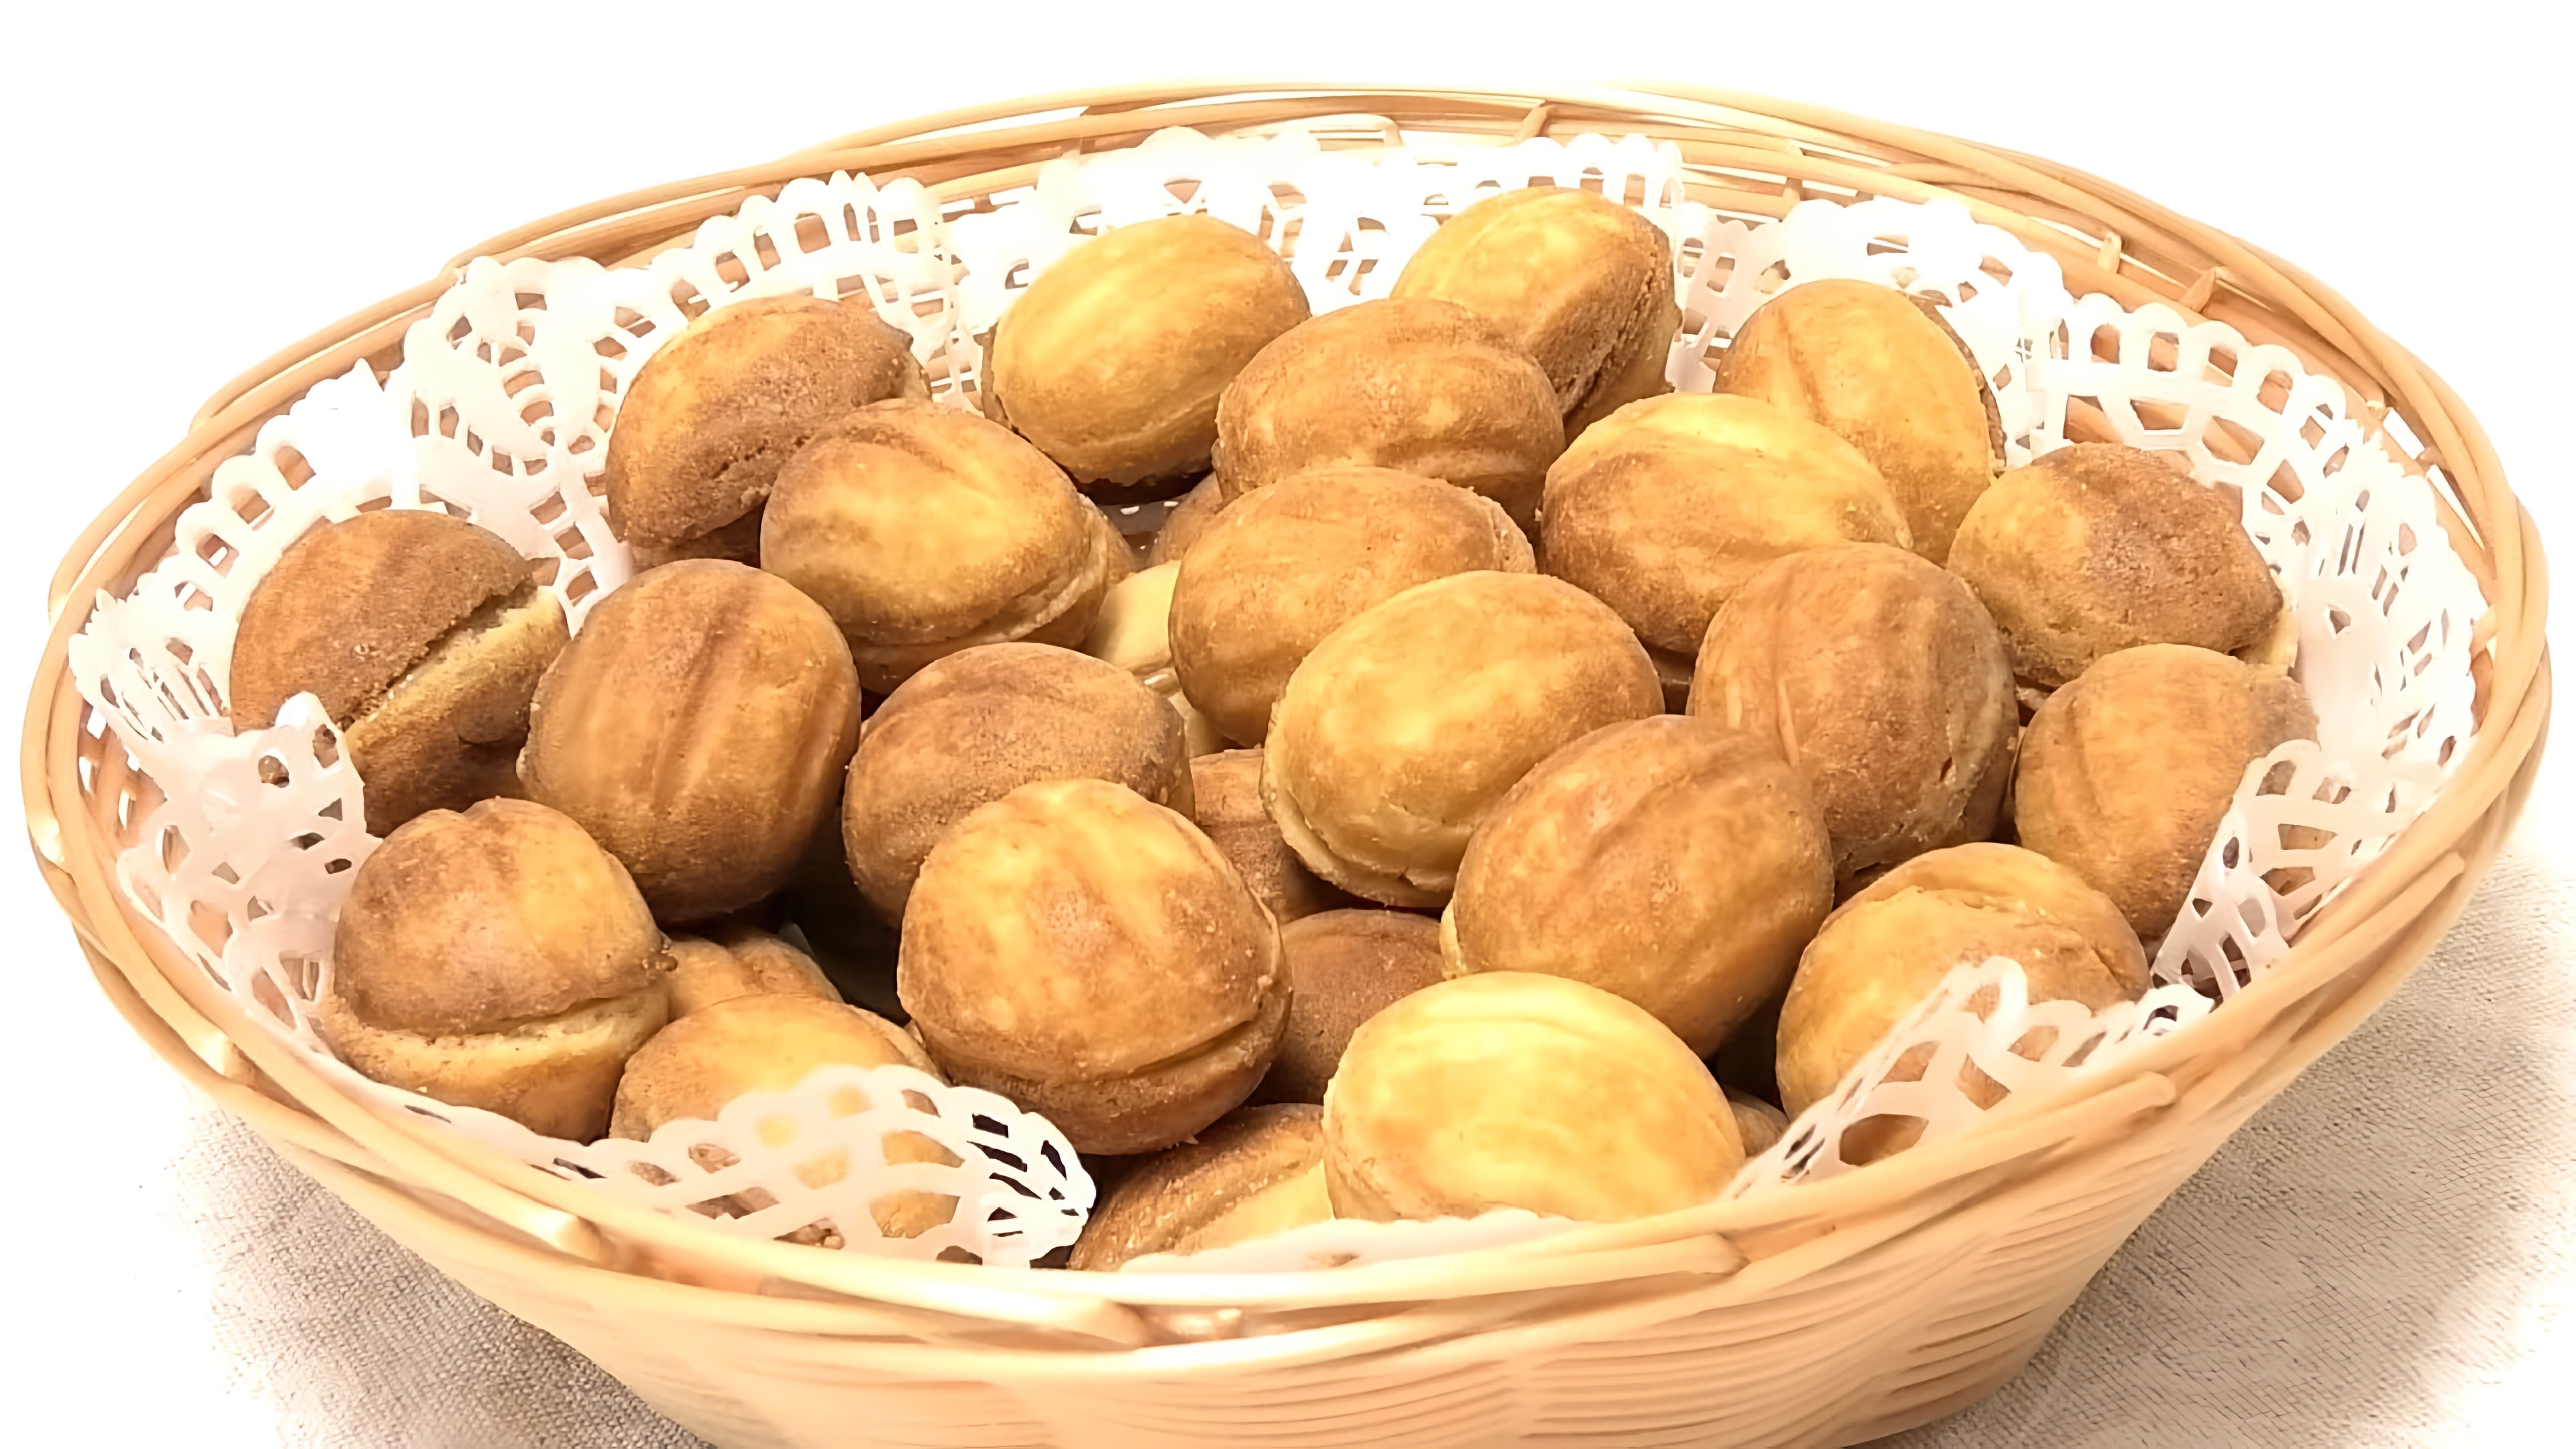 В этом видео демонстрируется процесс приготовления орешков со сгущенкой